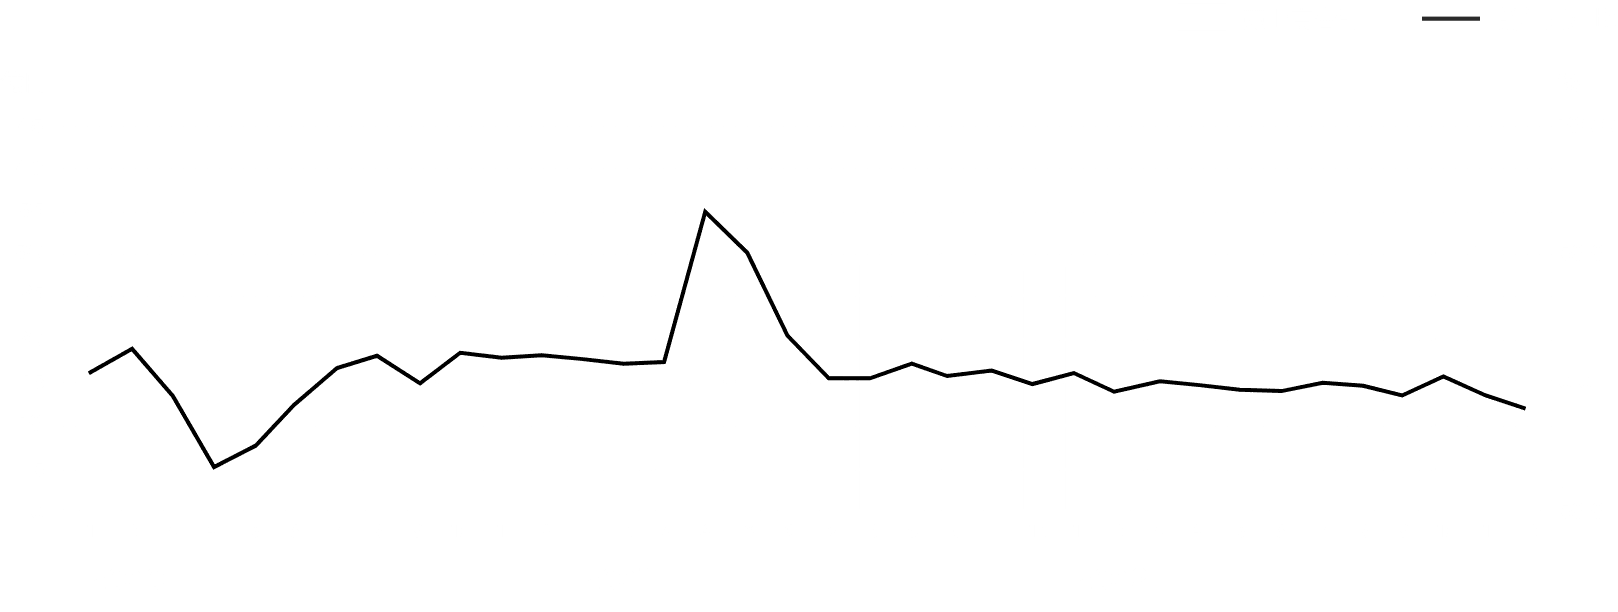 ゴルフ練習場の売上高と前年同月比の推移を表すグラフです。